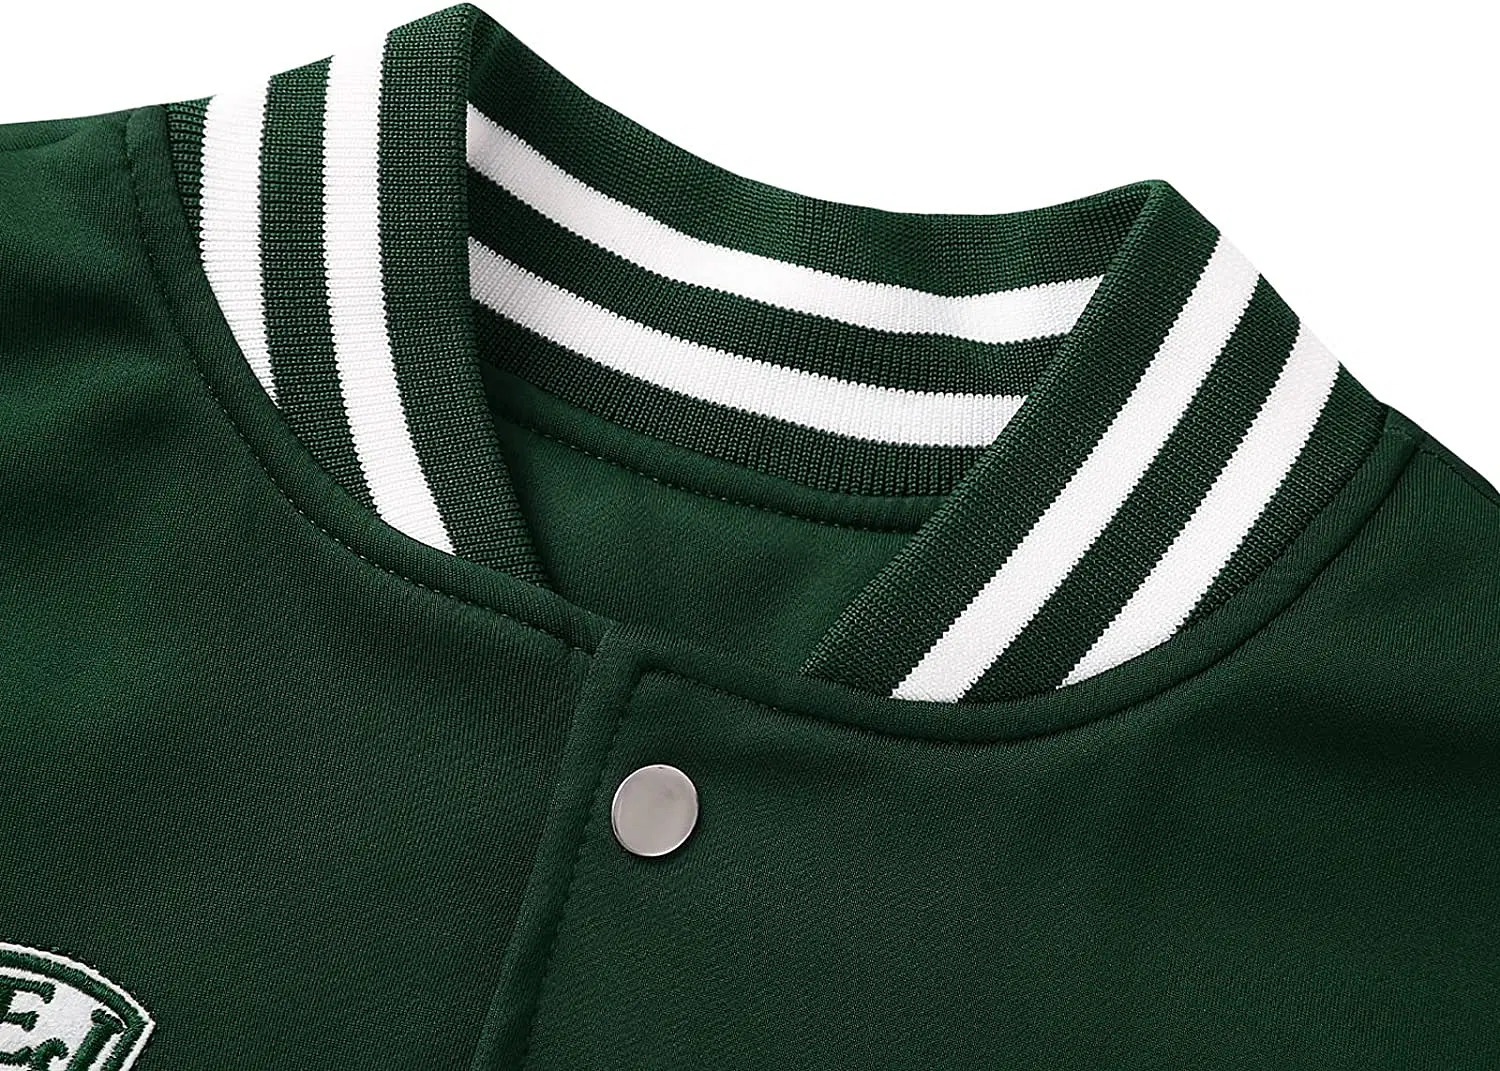 Vintage Varsity Jacket for Men: 5 Affordable Options